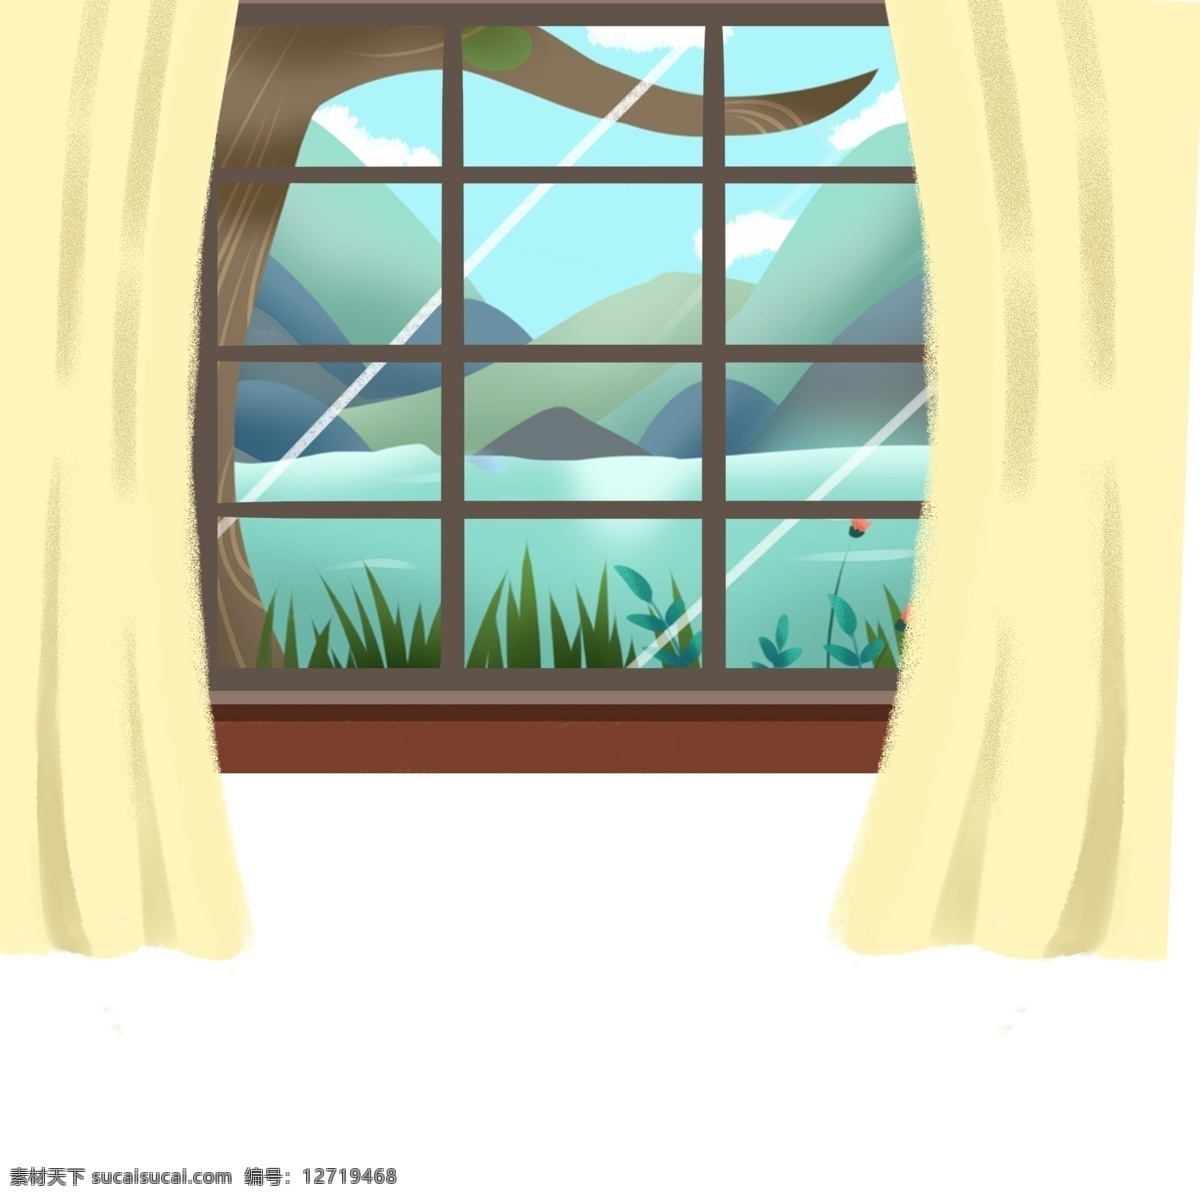 室内 窗子 风景 插画 户外 卡通 彩色 水彩 创意 手绘 绘画元素 现代 简约 装饰 图案